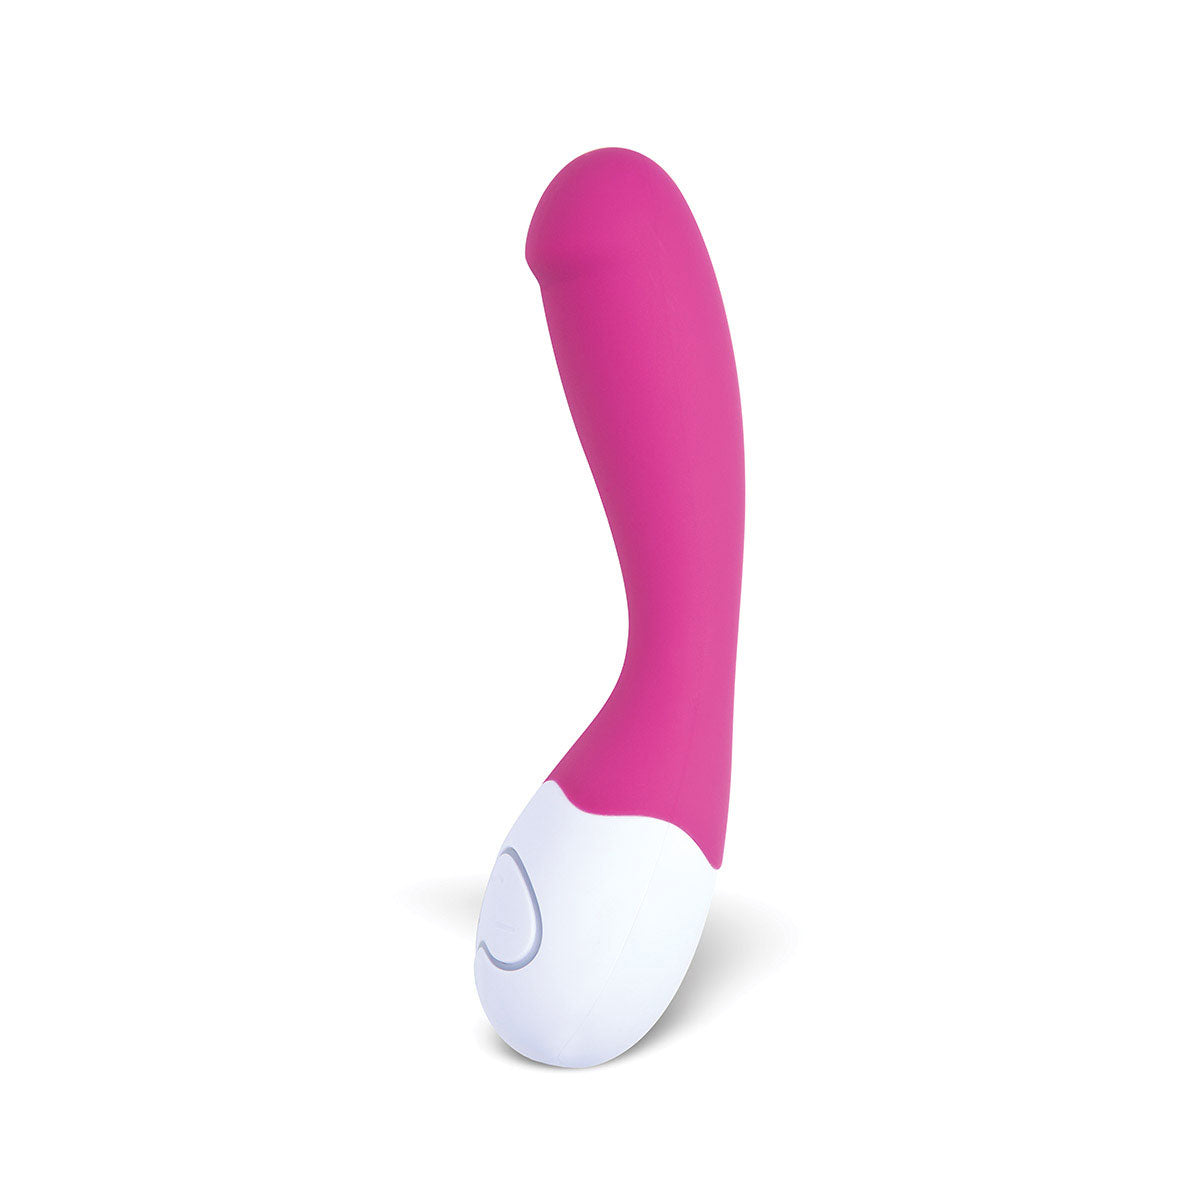 Lovelife Cuddle G-Spot Vibrator by OhMiBod Pink